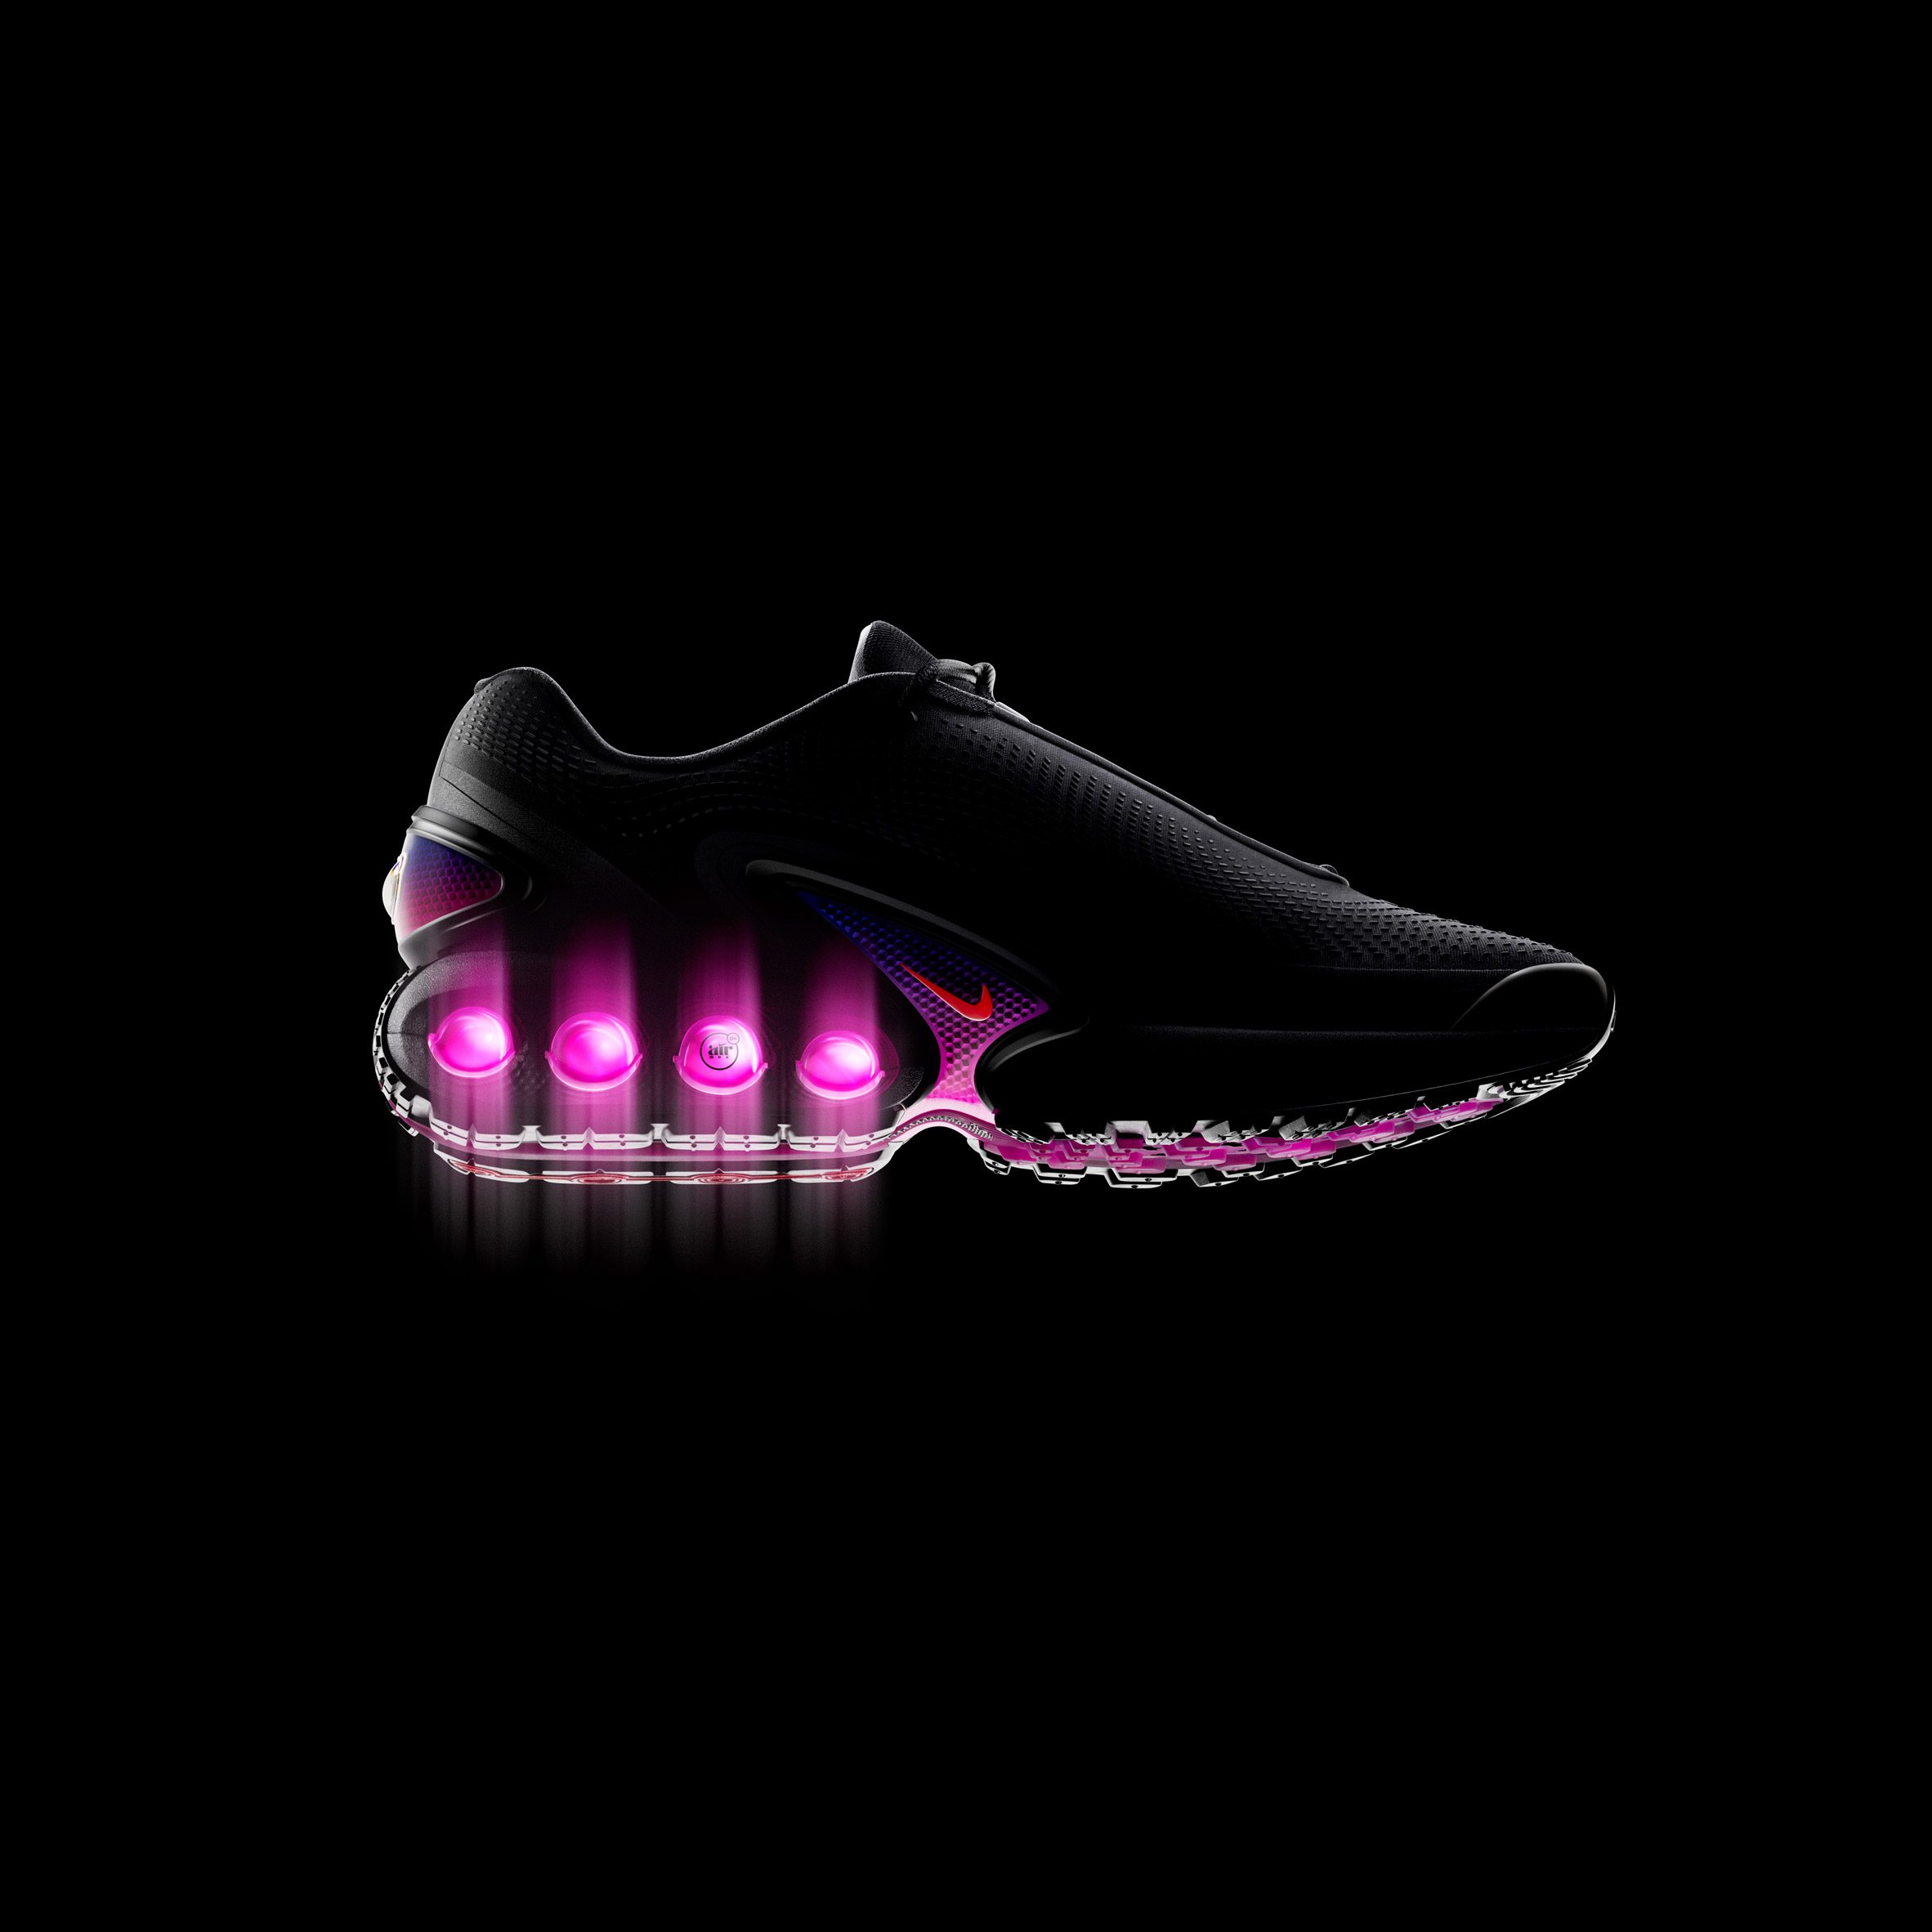 Nike Air Max DN with light shining through air soles